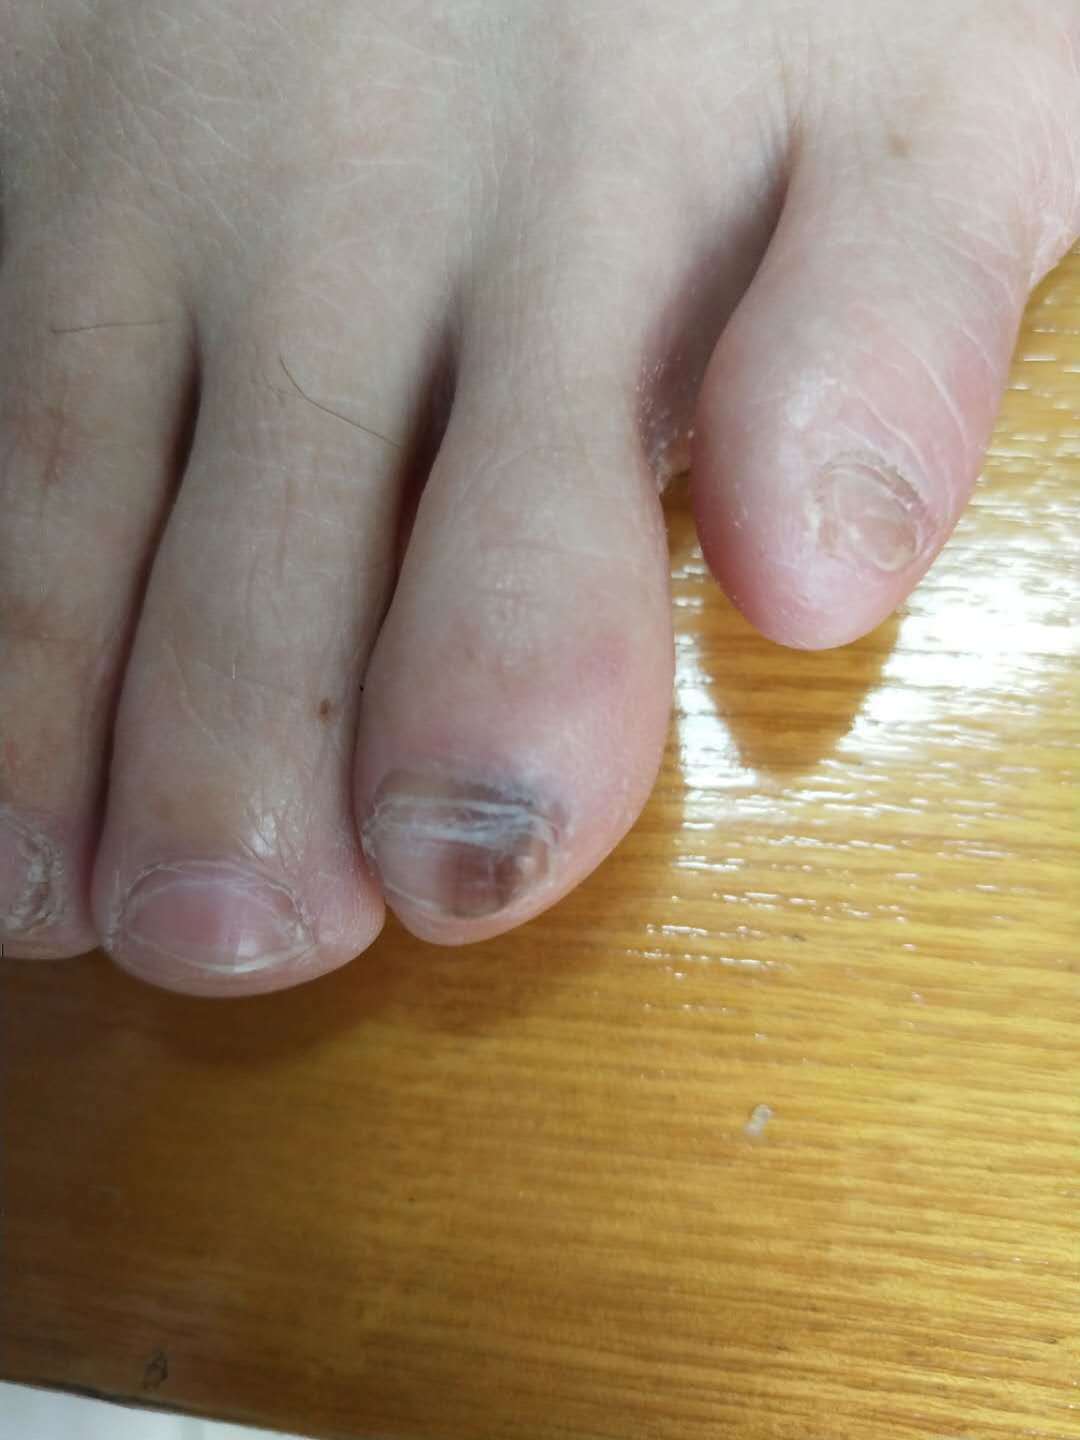 脚指甲黑色素瘤图片